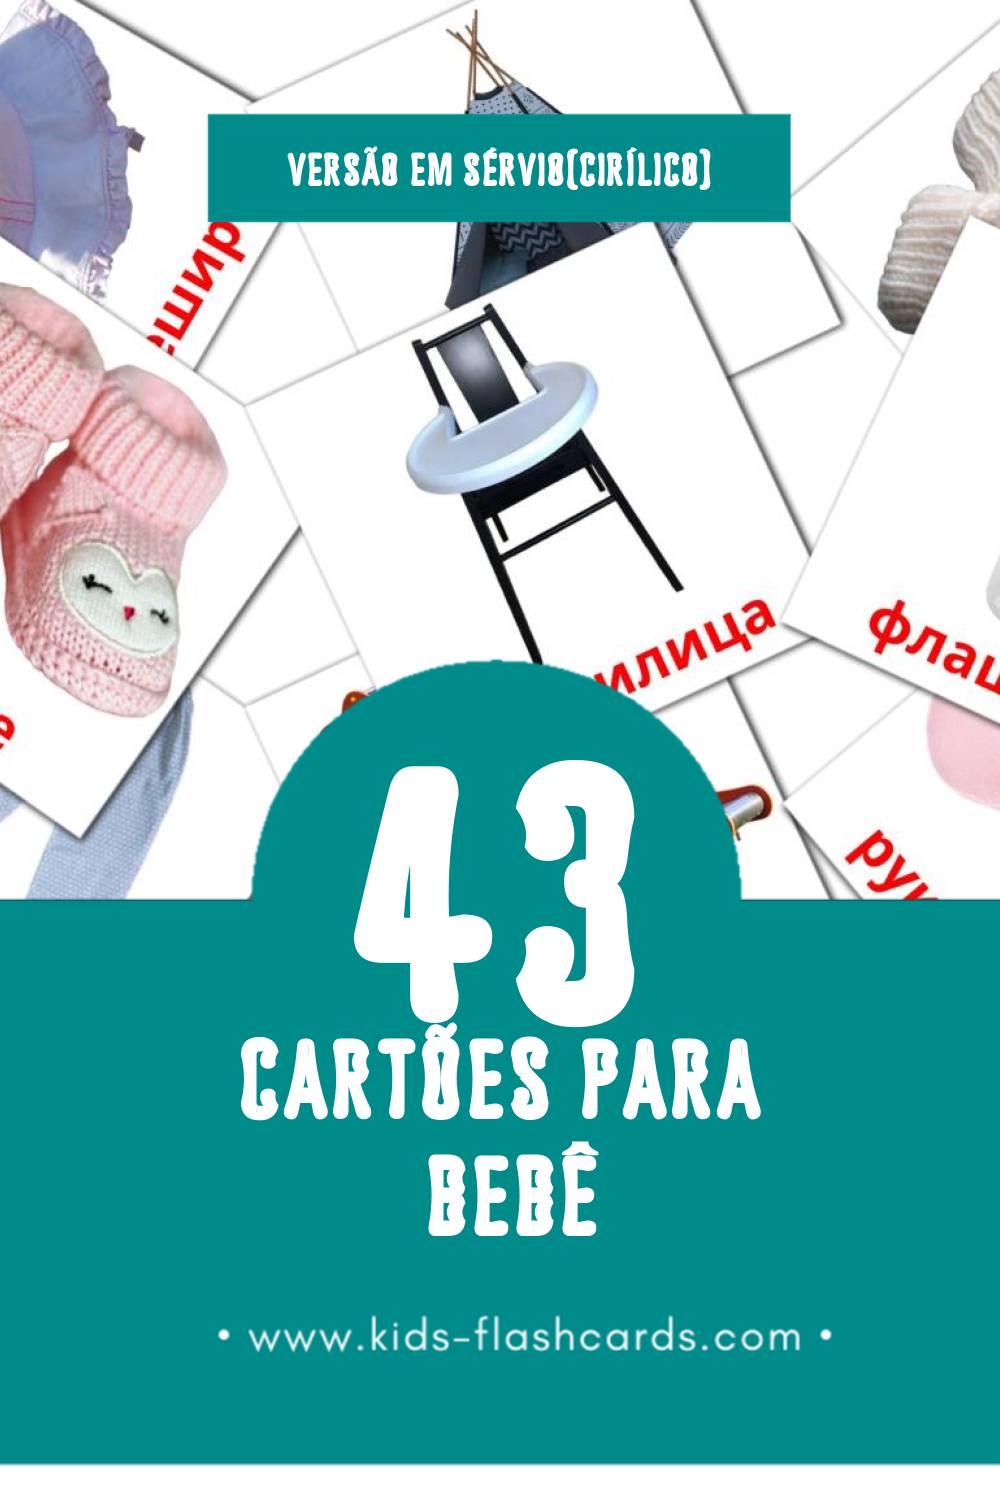 Flashcards de Беба Visuais para Toddlers (43 cartões em Sérvio(cirílico))